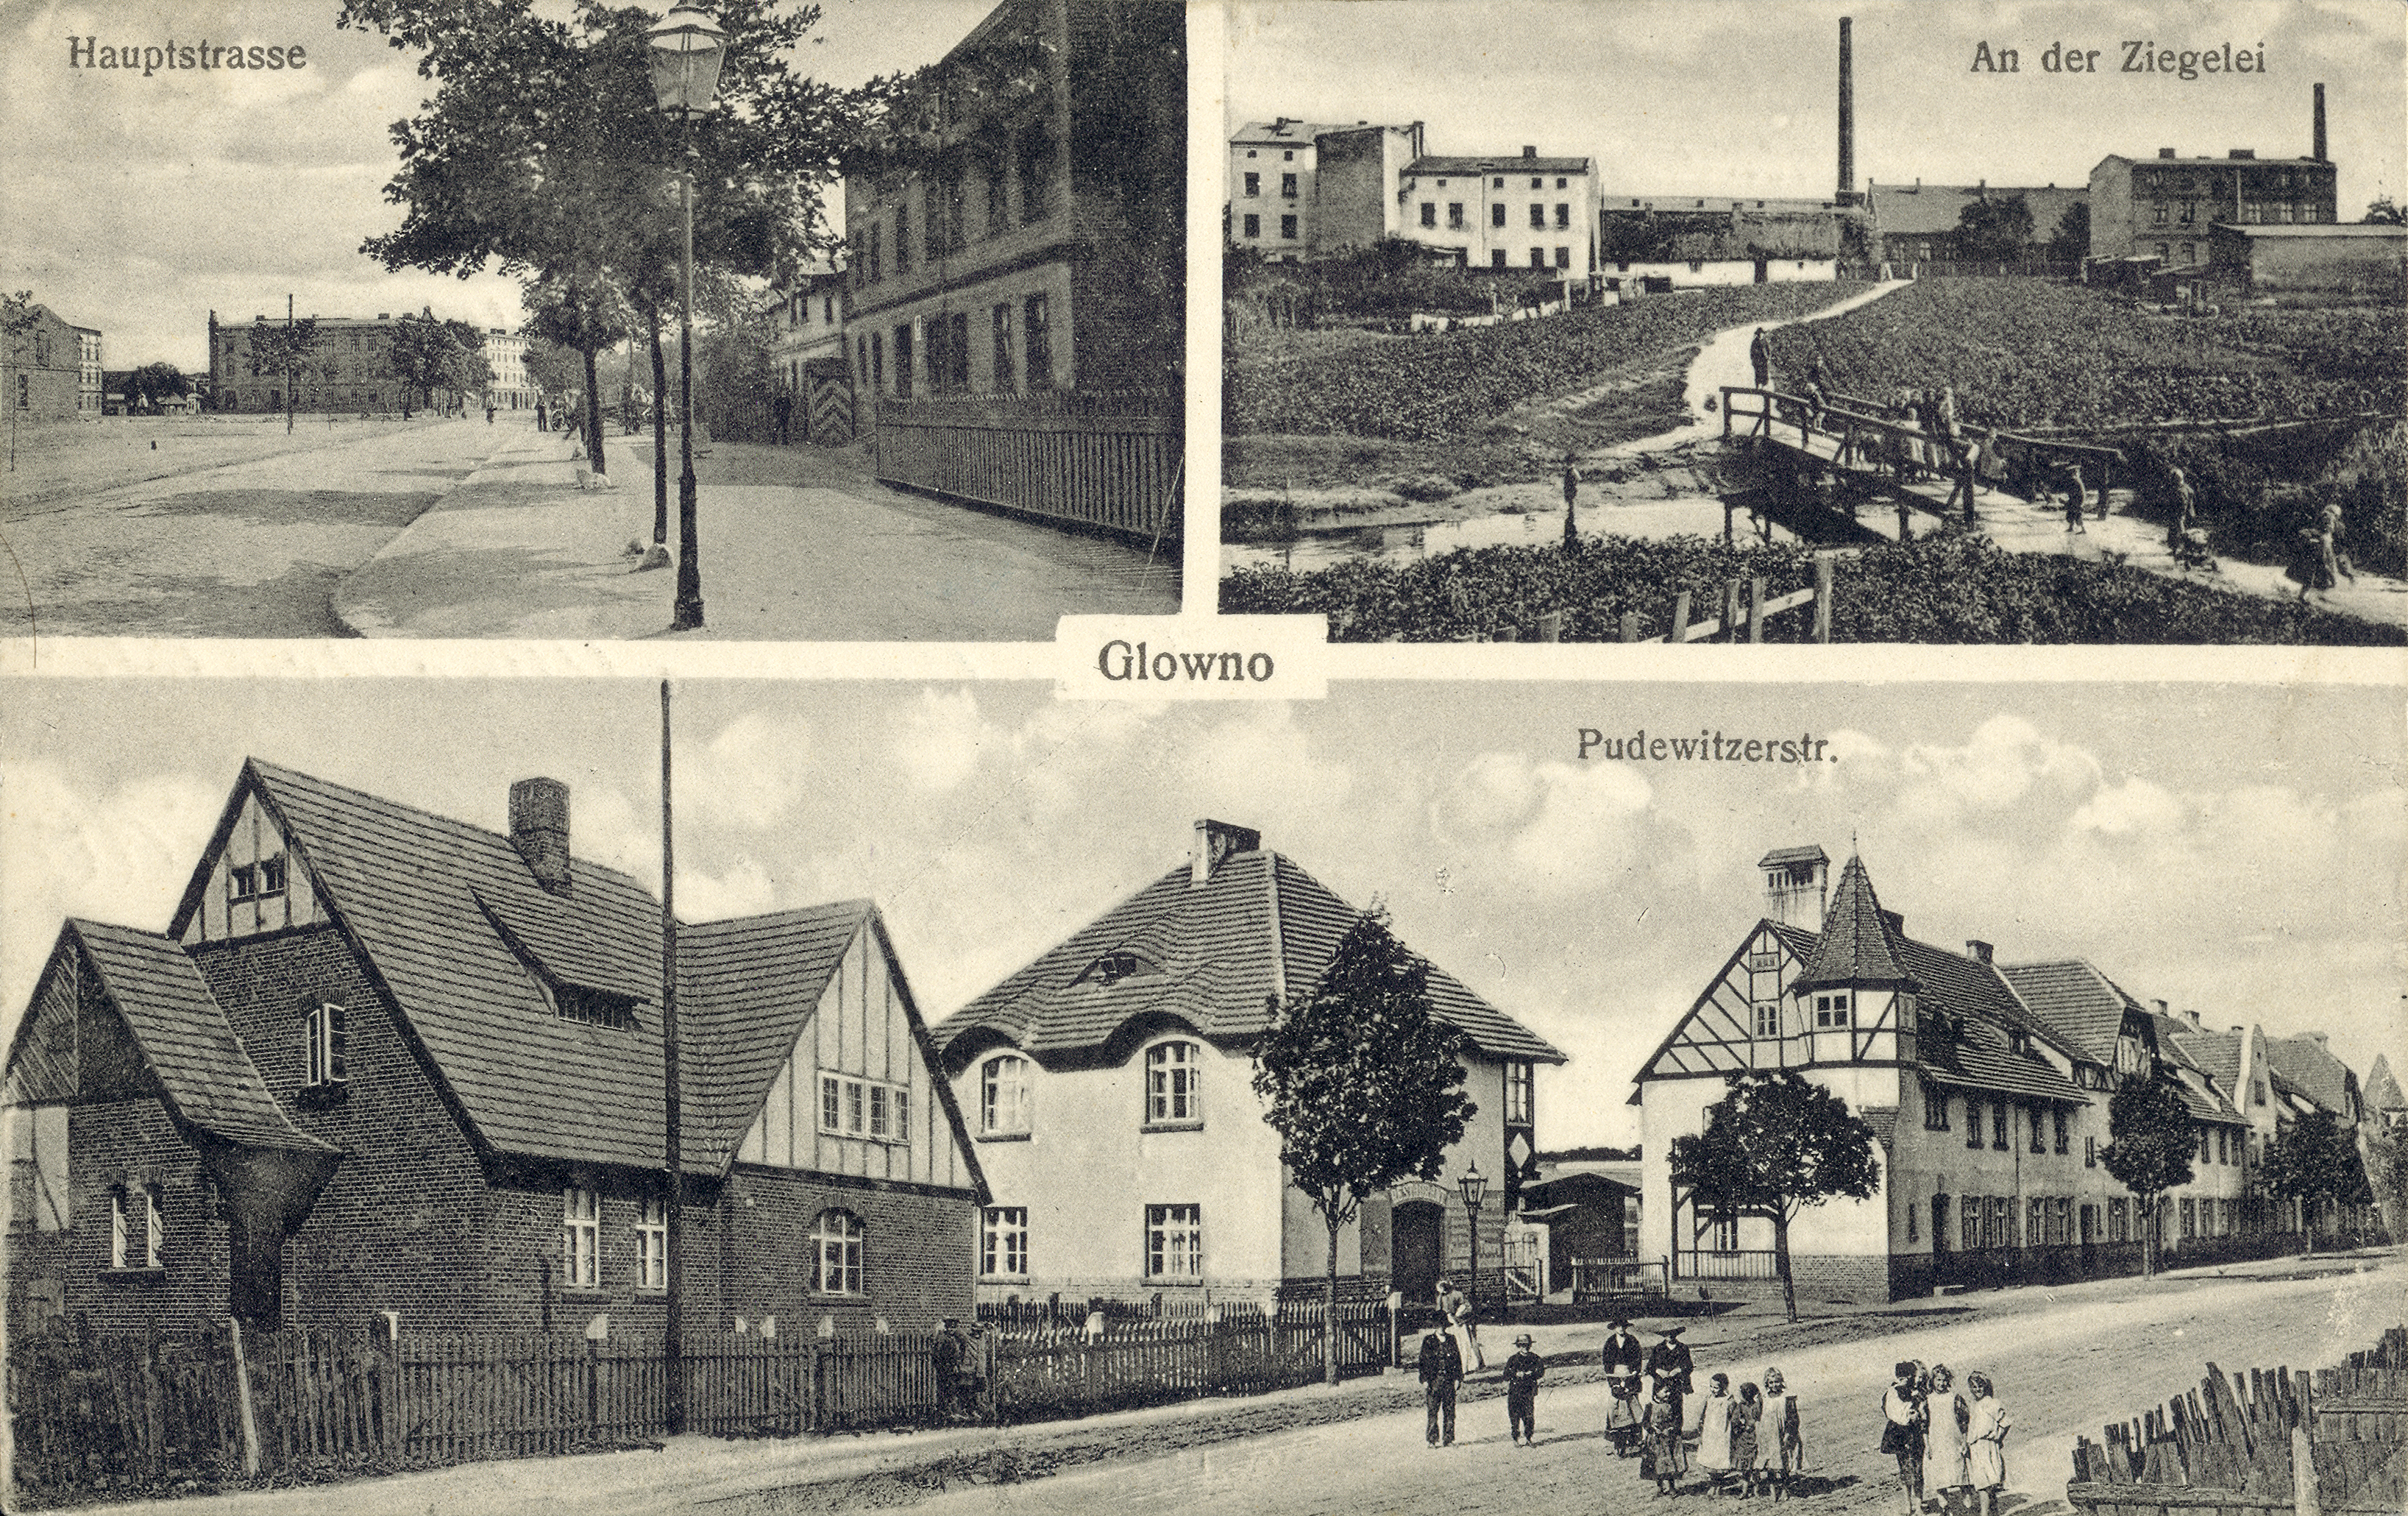 Glowno. Trzyobrazkowa karta pocztowa z widokami Głównej. [1] Hauptstrasse (ulica Główna, po lewej stronie widoczny fragment Rynku Wschodniego); [2] An der Ziegelei (Cegielnia); [3] Pudewitzerstrasse (ul. Pobiedziska, dziś: ulica Gnieźnieńska) – kolonia Karlsbunne. Osiedle zostało wybudowane w 1906 roku z inicjatywy Deutsche Arbeiter-Wohnungsgenossenschaft (Niemiecka Robotnicza Spółdzielnia Mieszkaniowa), pomiędzy Pudewitzerstrasse (ul. Pobiedziską, dziś Gnieźnieńską), a rzeką Główną. Składało się z domów typu willowego dla majstrów i urzędników miejskich oraz podłużnego budynku wielorodzinnego wzdłuż ul. Gnieźnieńskiej, przeznaczonego dla robotników. W 1919 roku osiedle zostało zakupione przez Zakłady Cegielskiego. Ze zbiorów Biblioteki Uniwersyteckiej w Poznaniu